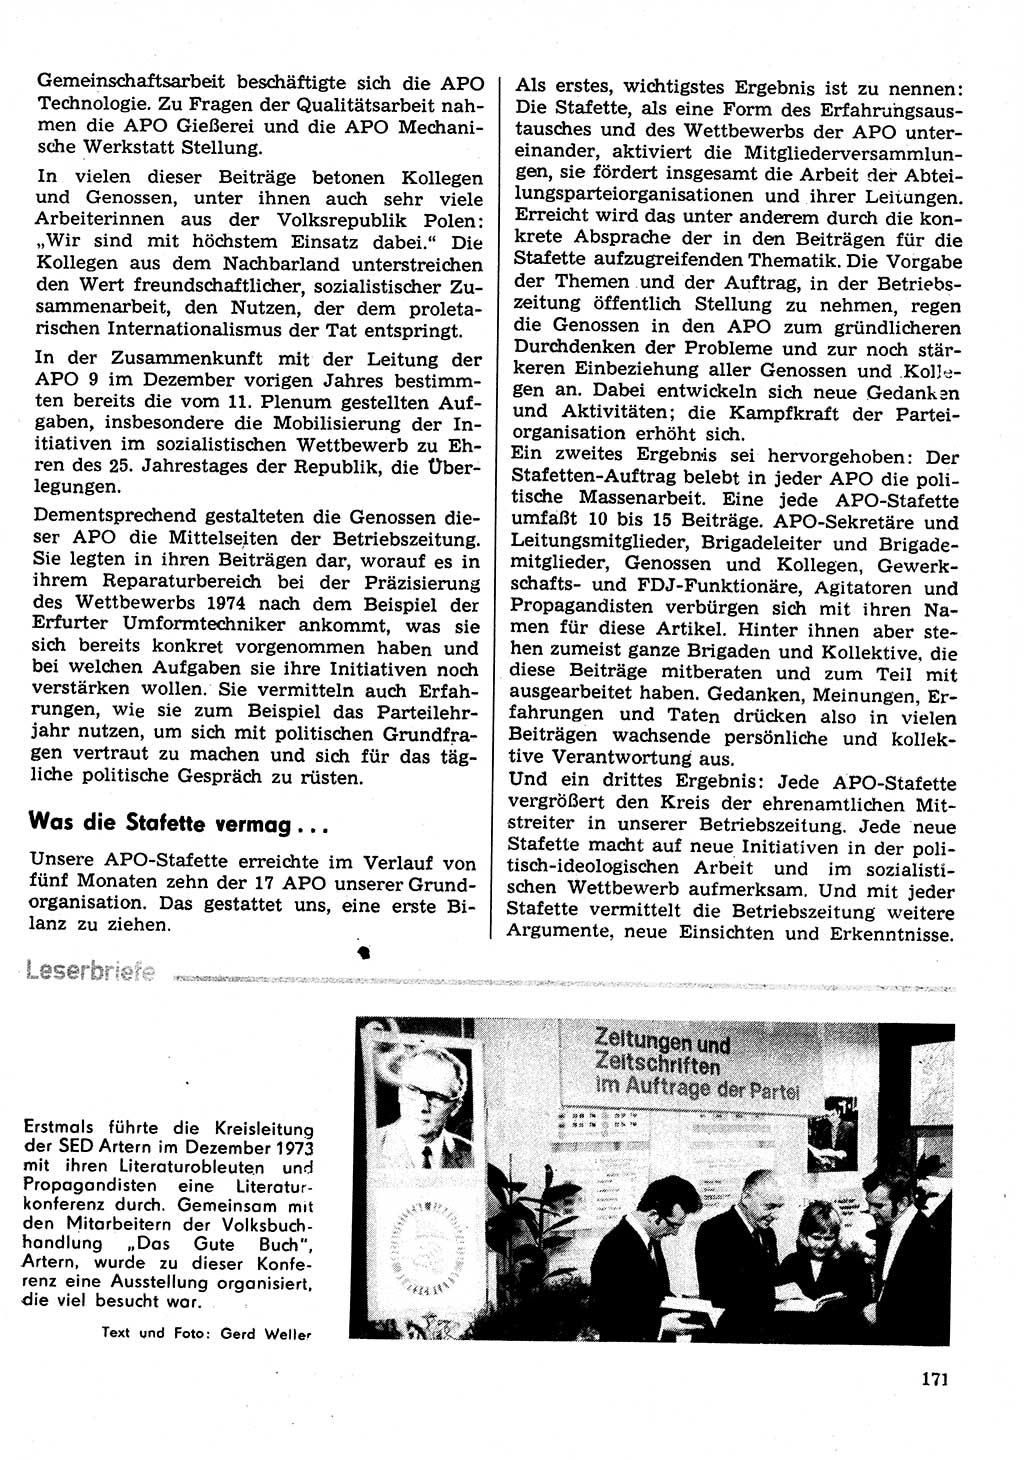 Neuer Weg (NW), Organ des Zentralkomitees (ZK) der SED (Sozialistische Einheitspartei Deutschlands) für Fragen des Parteilebens, 29. Jahrgang [Deutsche Demokratische Republik (DDR)] 1974, Seite 171 (NW ZK SED DDR 1974, S. 171)